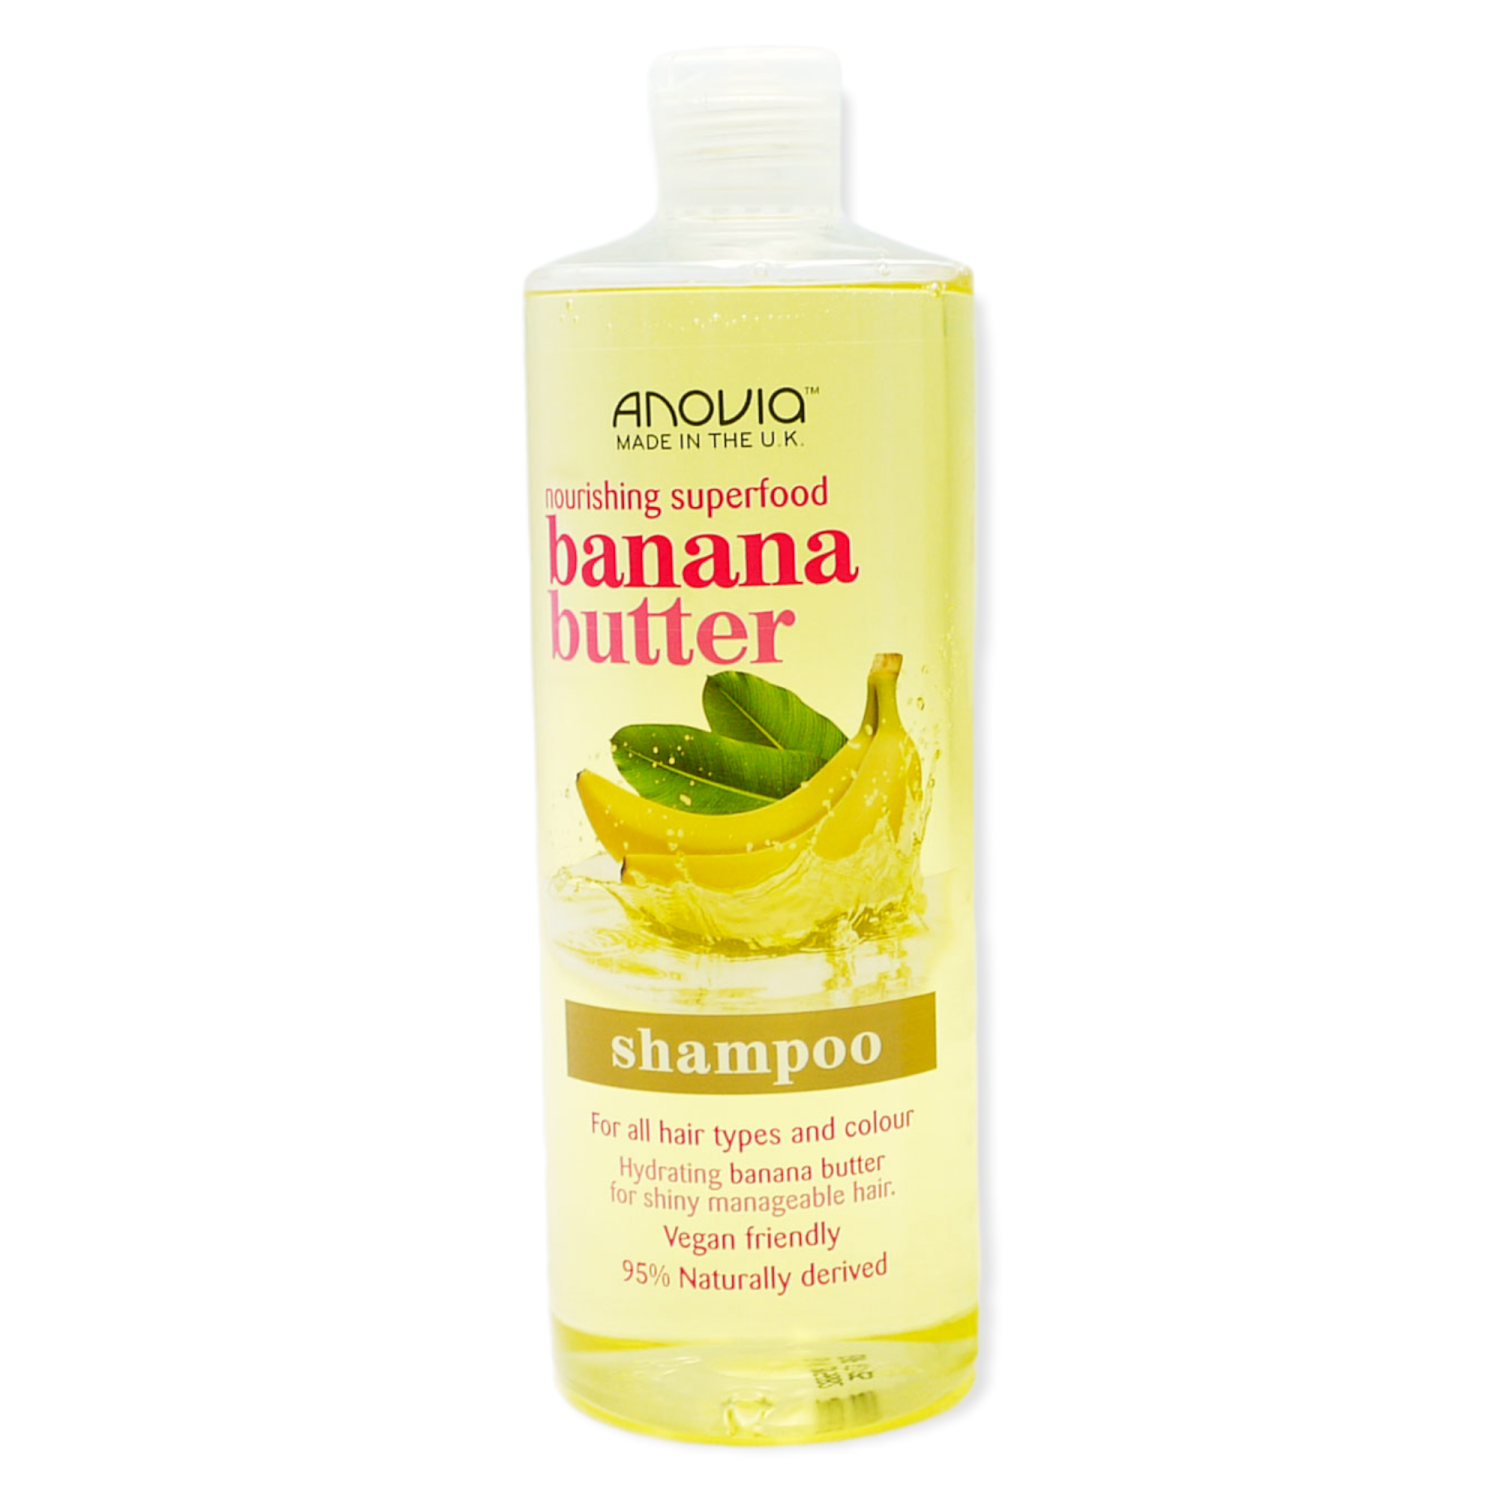 Anovia Banana Shampoo 500ml